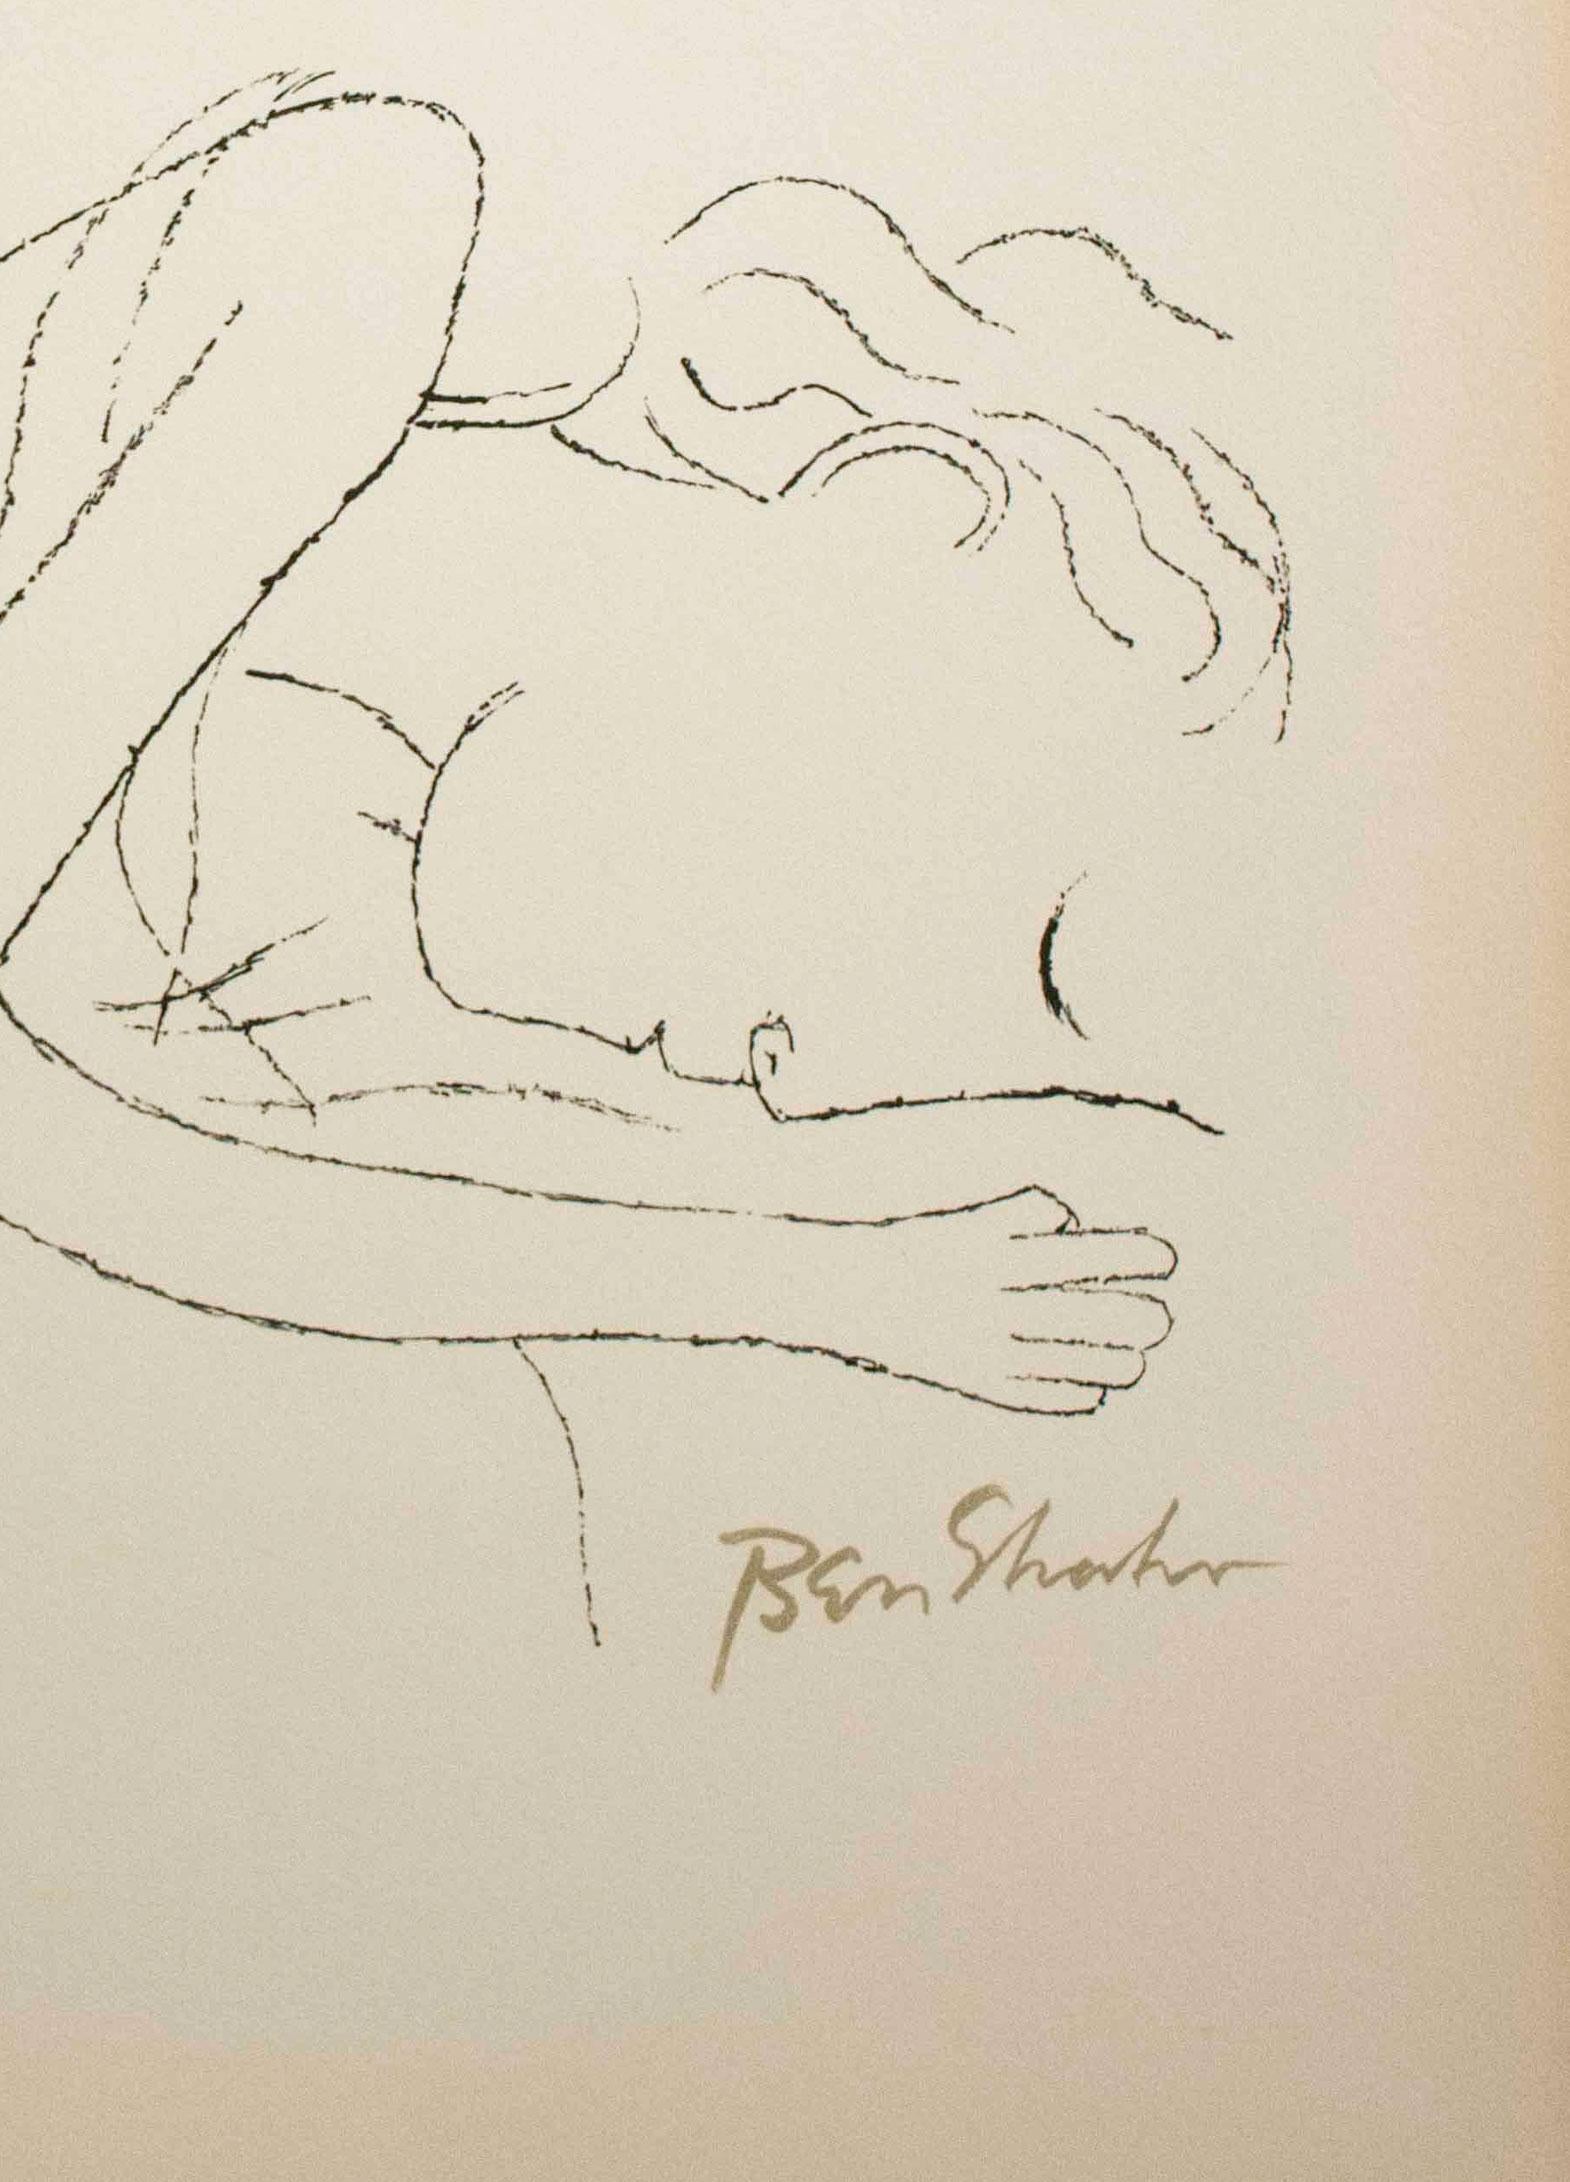 Of Light, White Sleeping Women in Childbed (Femmes endormies dans une chambre à coucher blanche) - Portfolio de Rilke - Réalisme américain Print par Ben Shahn